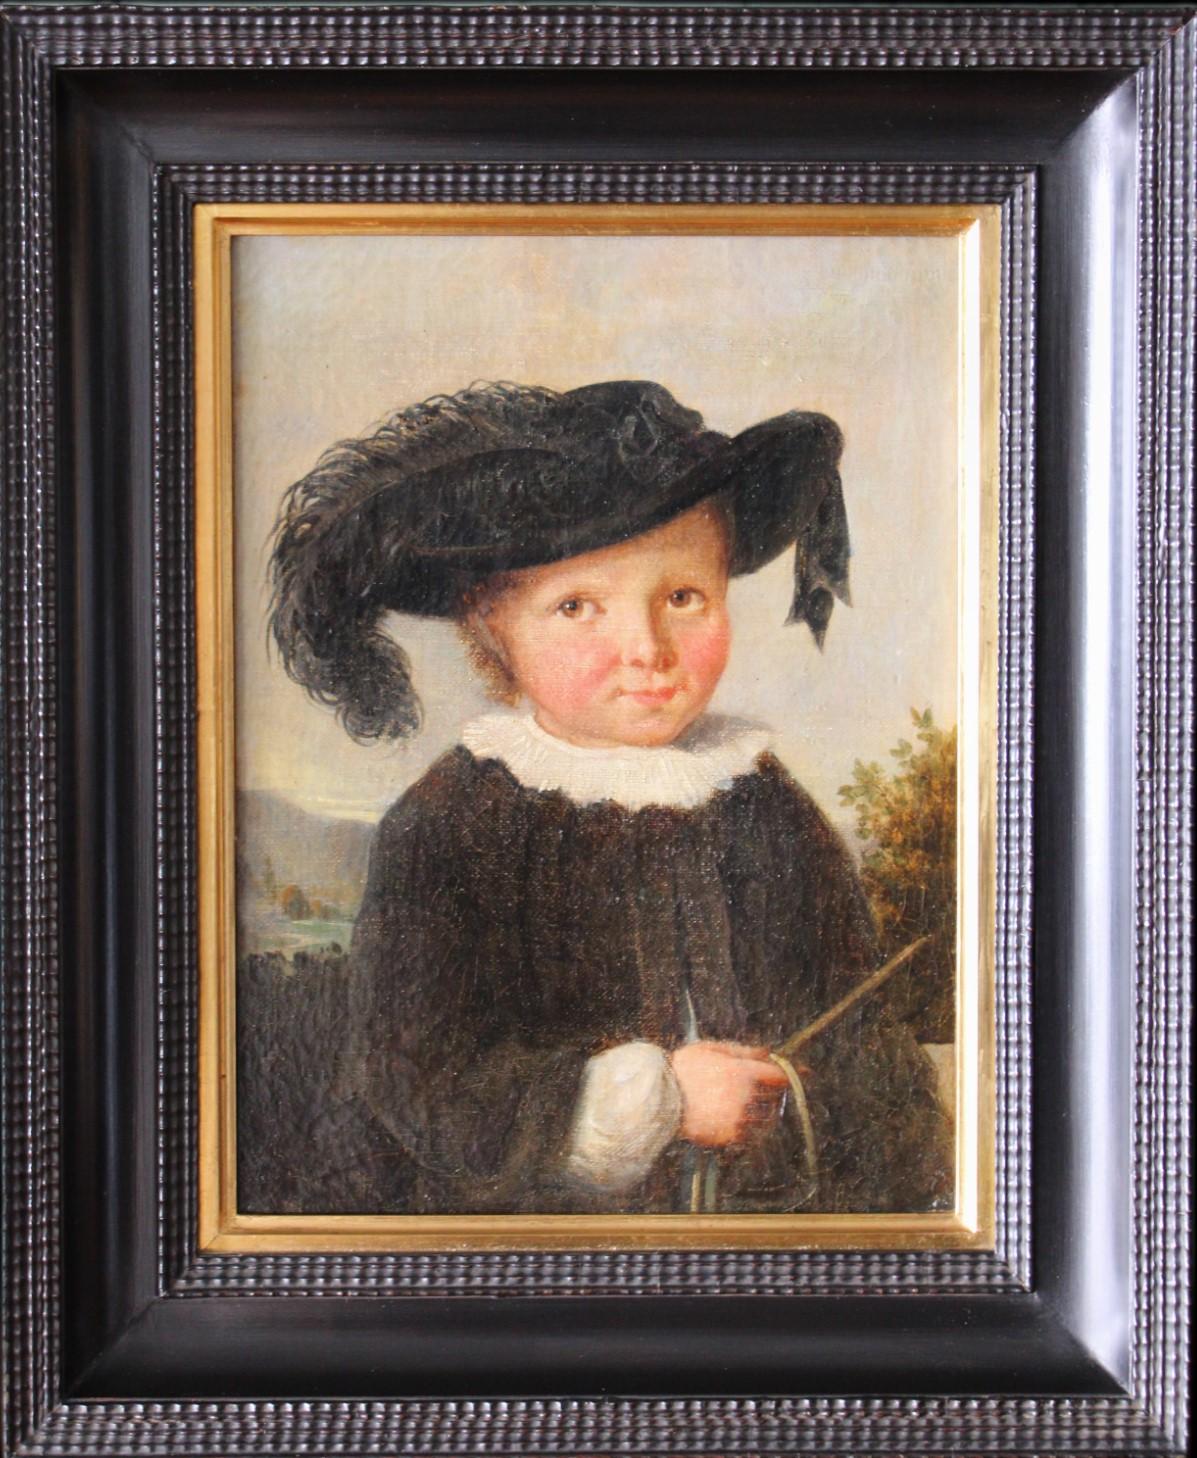 Unknown Portrait Painting - Antique portrait of a boy, child portrait, early 1800's male framed portrait